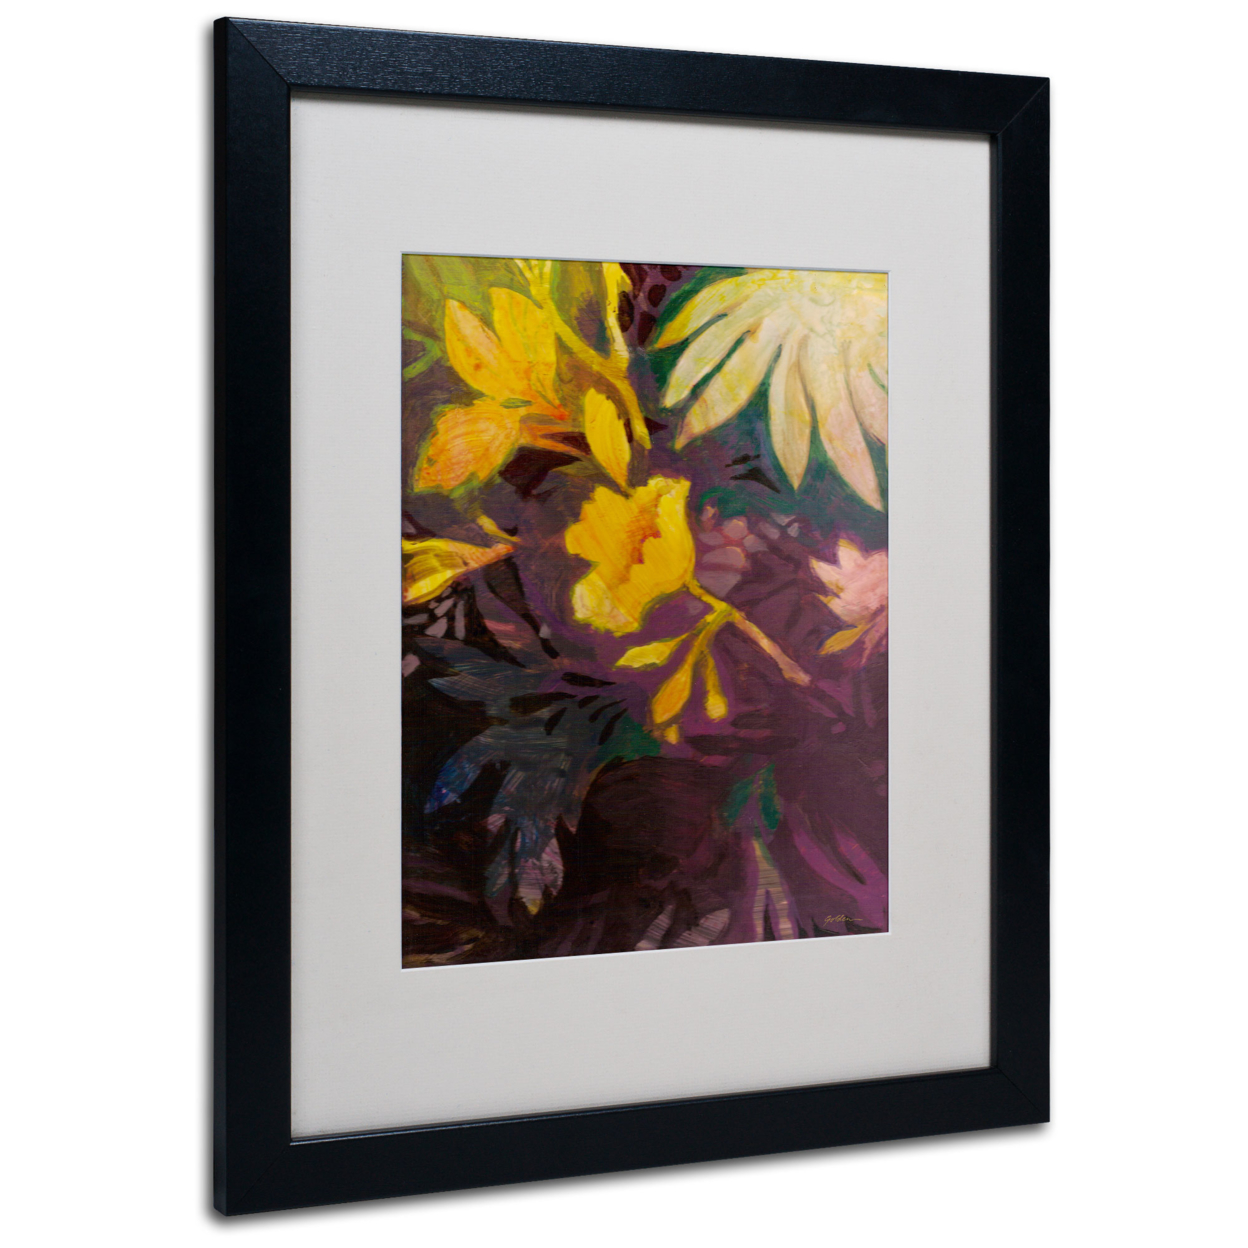 Sheila Golden 'Tropical Evening' Black Wooden Framed Art 18 X 22 Inches